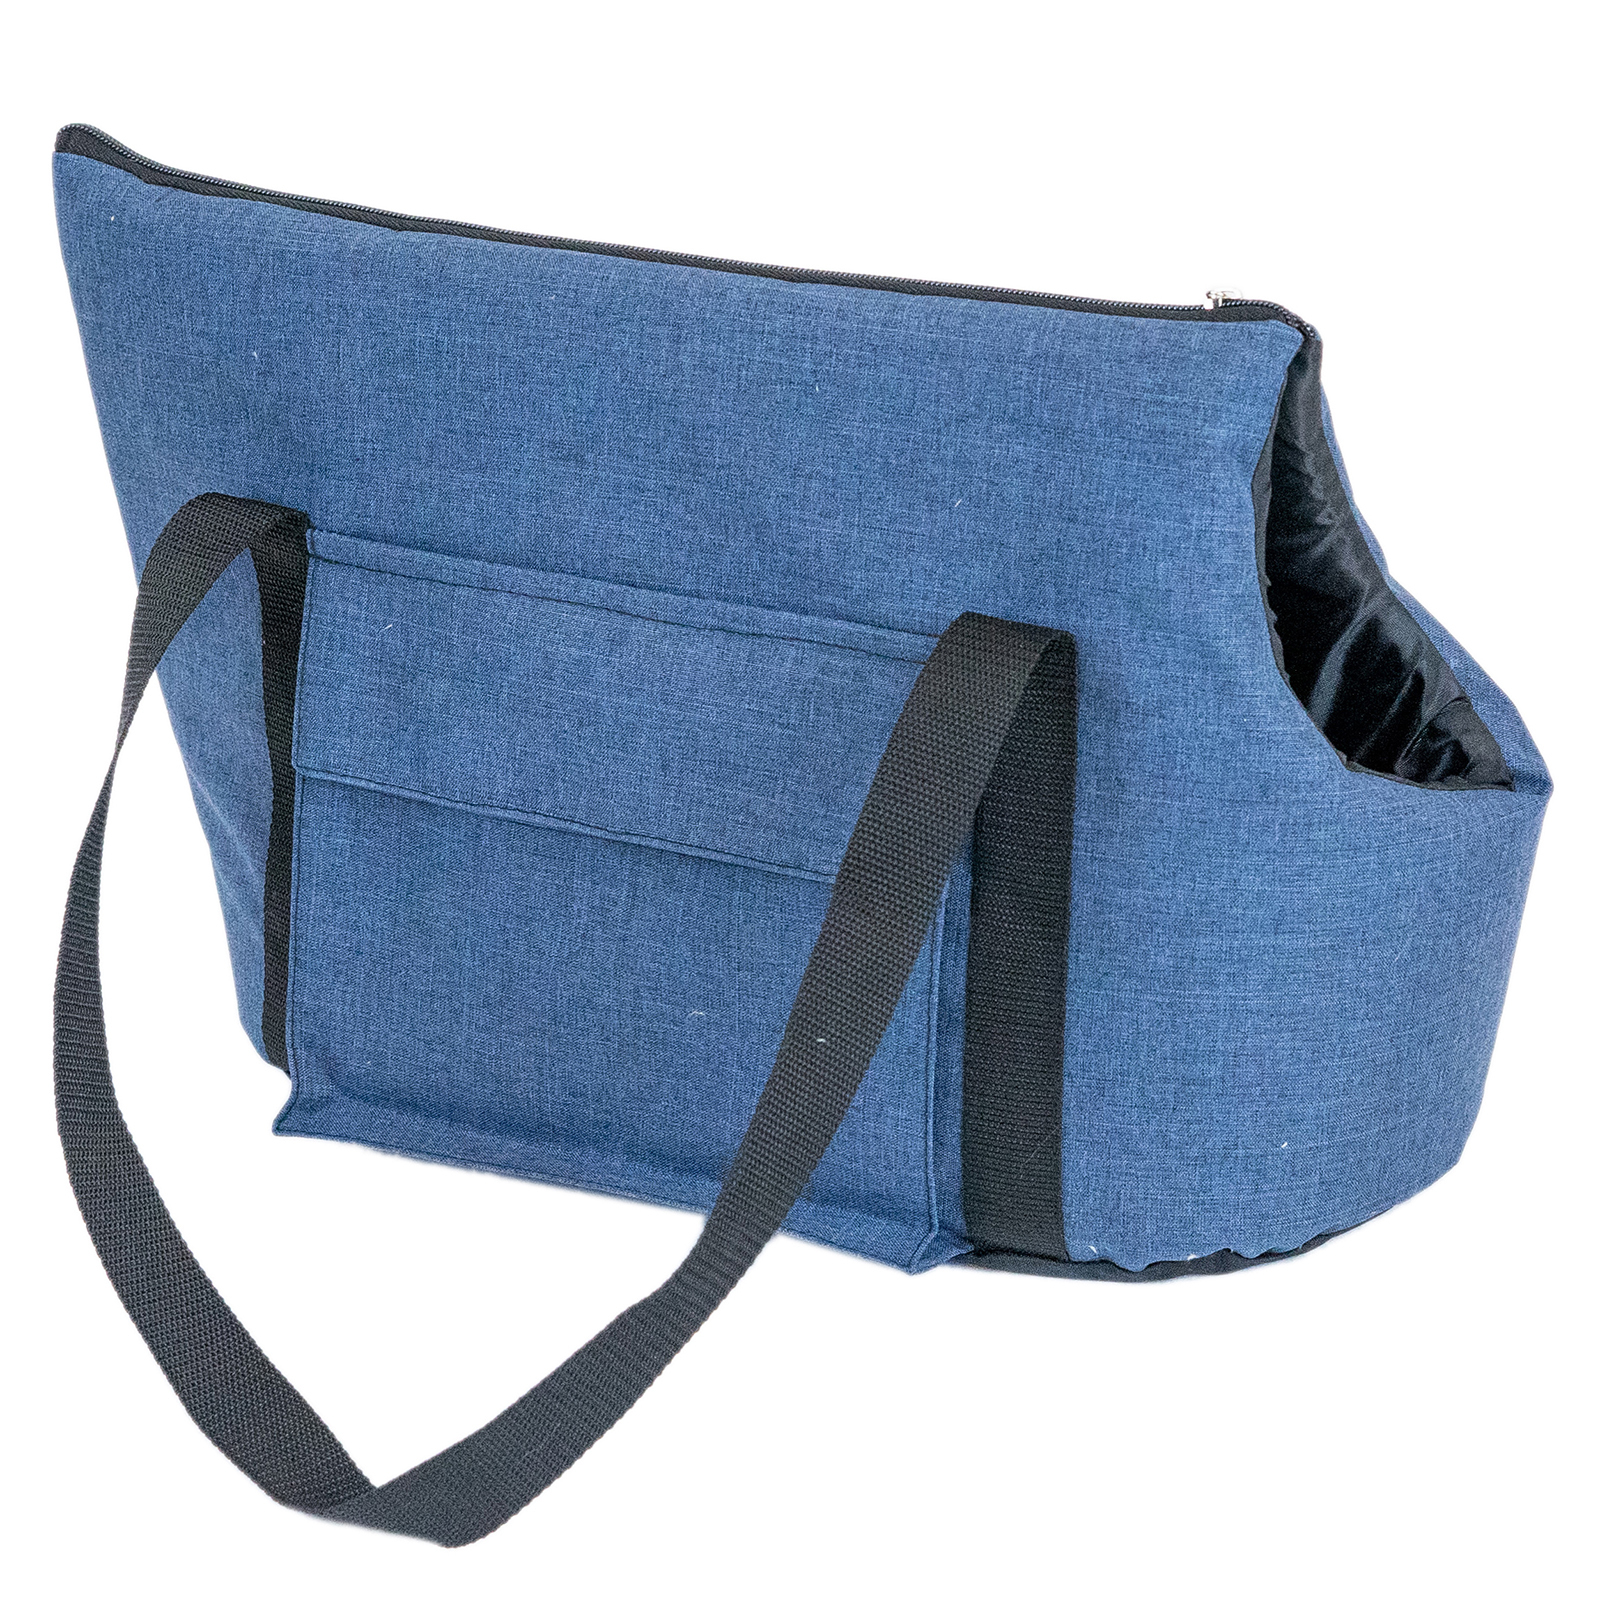 фото Переноска сумка блюз pettails №3 с 2мя карманами 47 х 23 х 29см (катионик,поролон), синяя